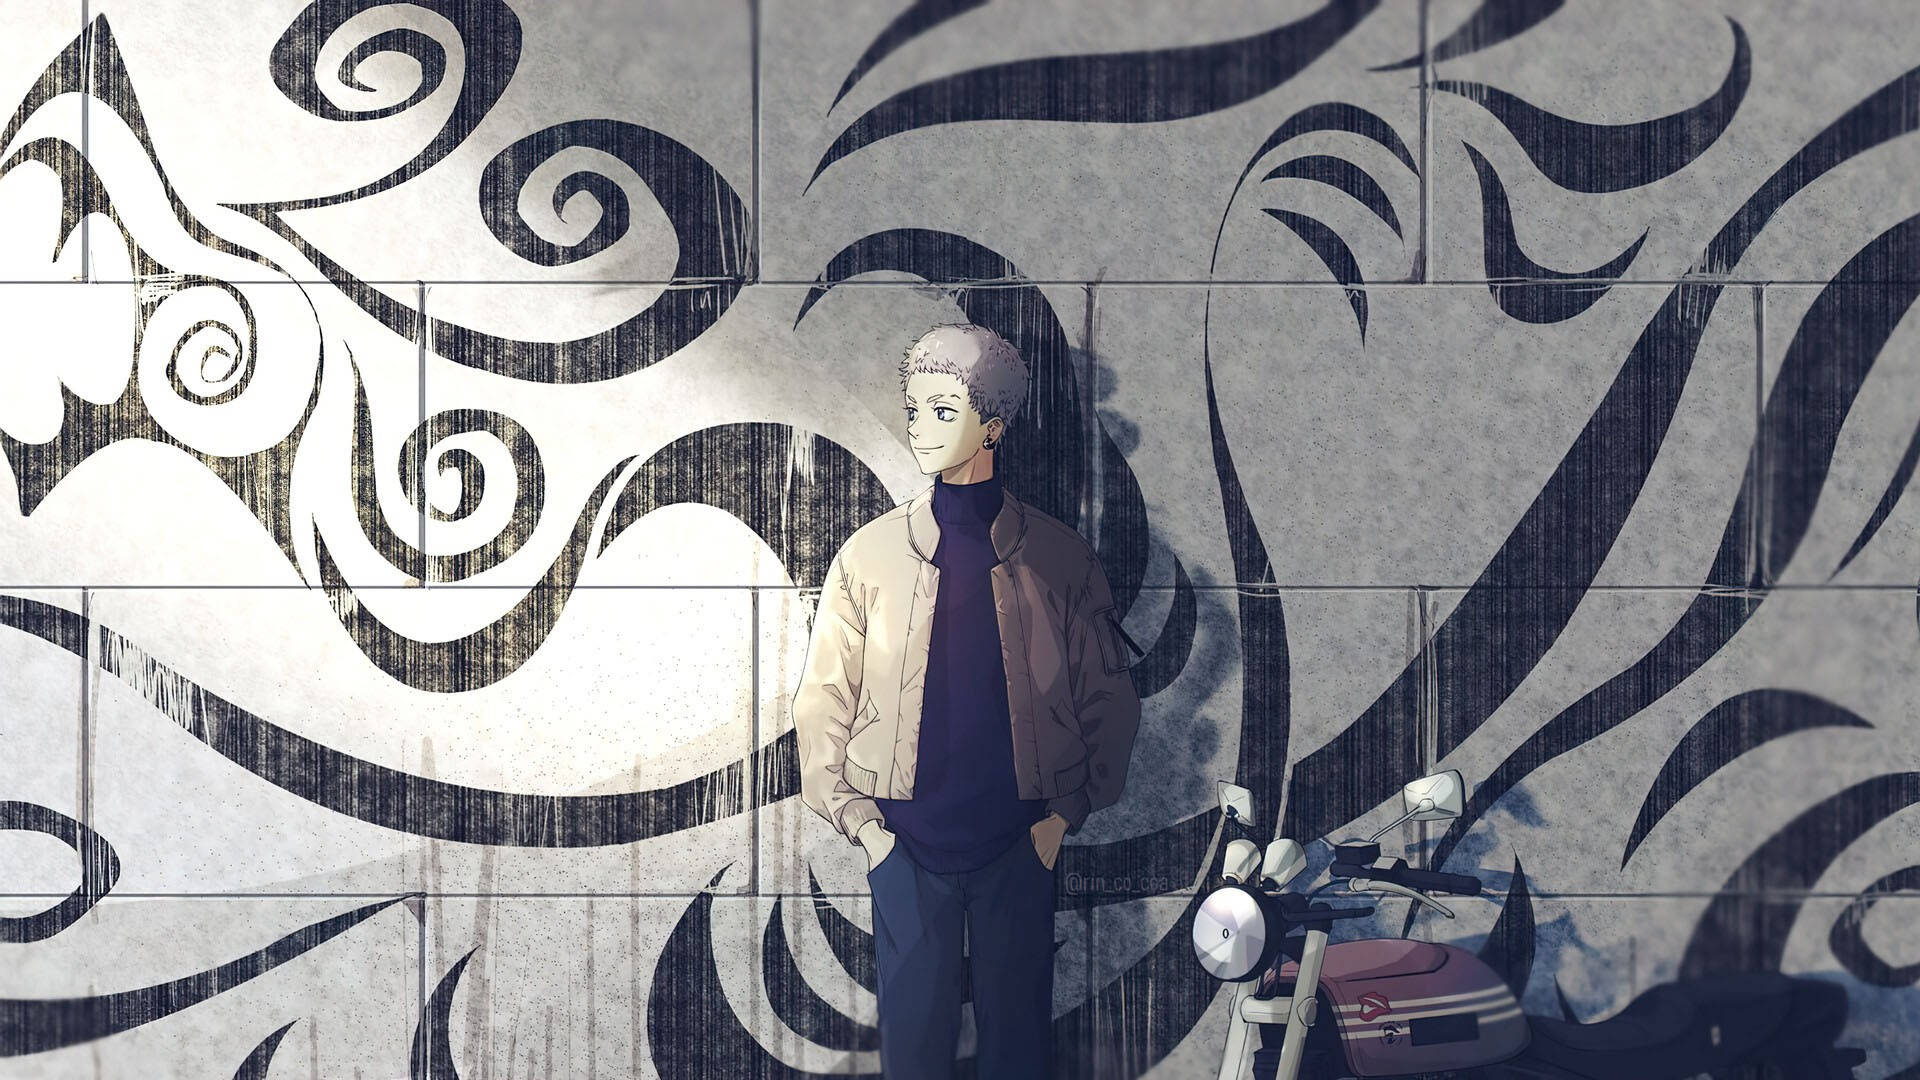 Takashi From Tokyo Revengers Manga Wearing Jacket Background